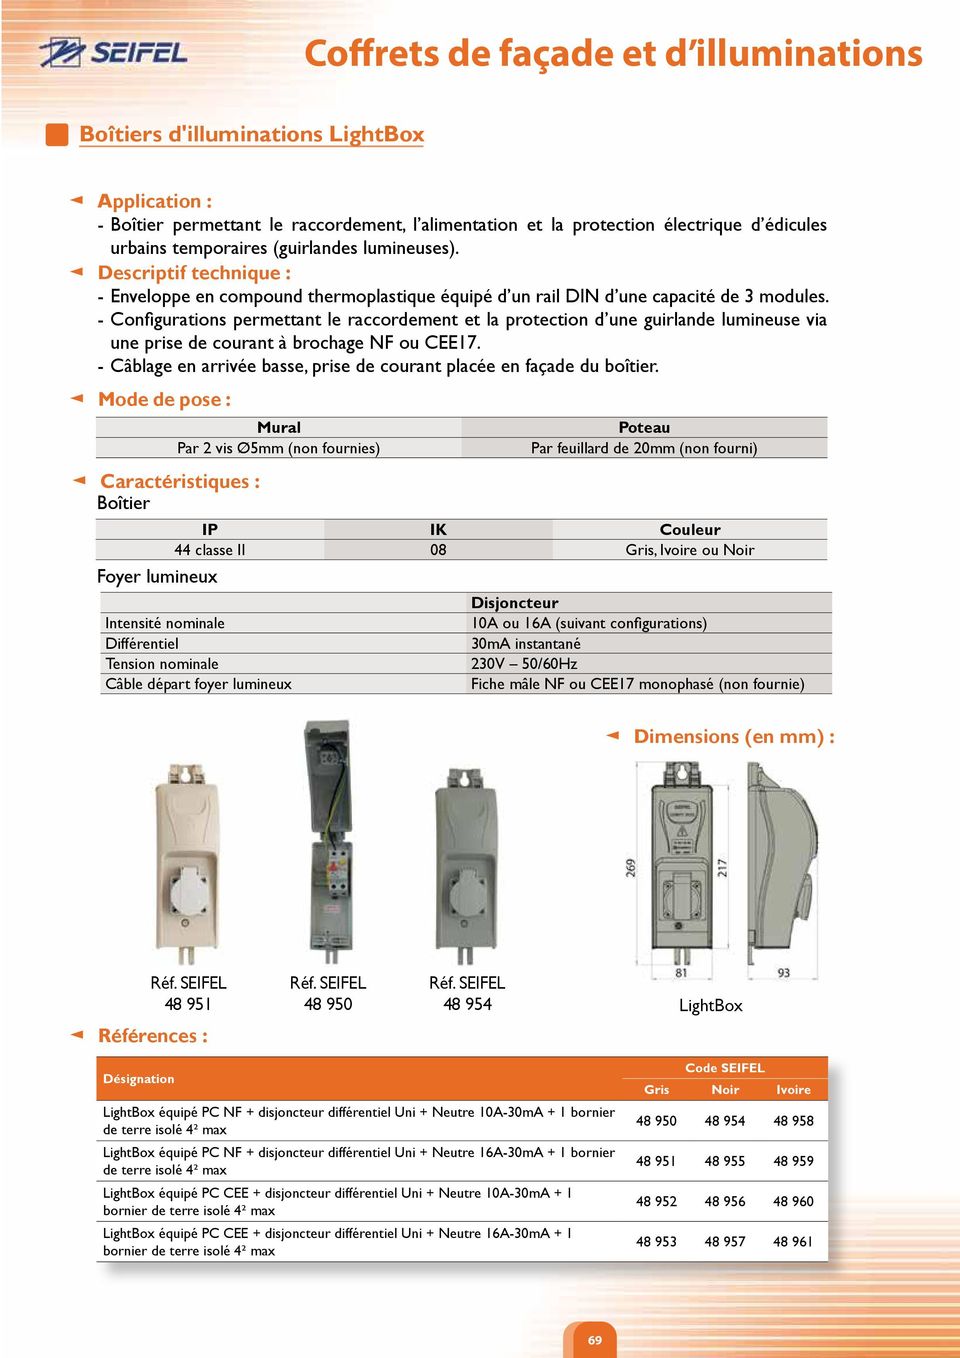 - Configurations permettant le raccordement et la protection d une guirlande lumineuse via une prise de courant à brochage NF ou CEE17.